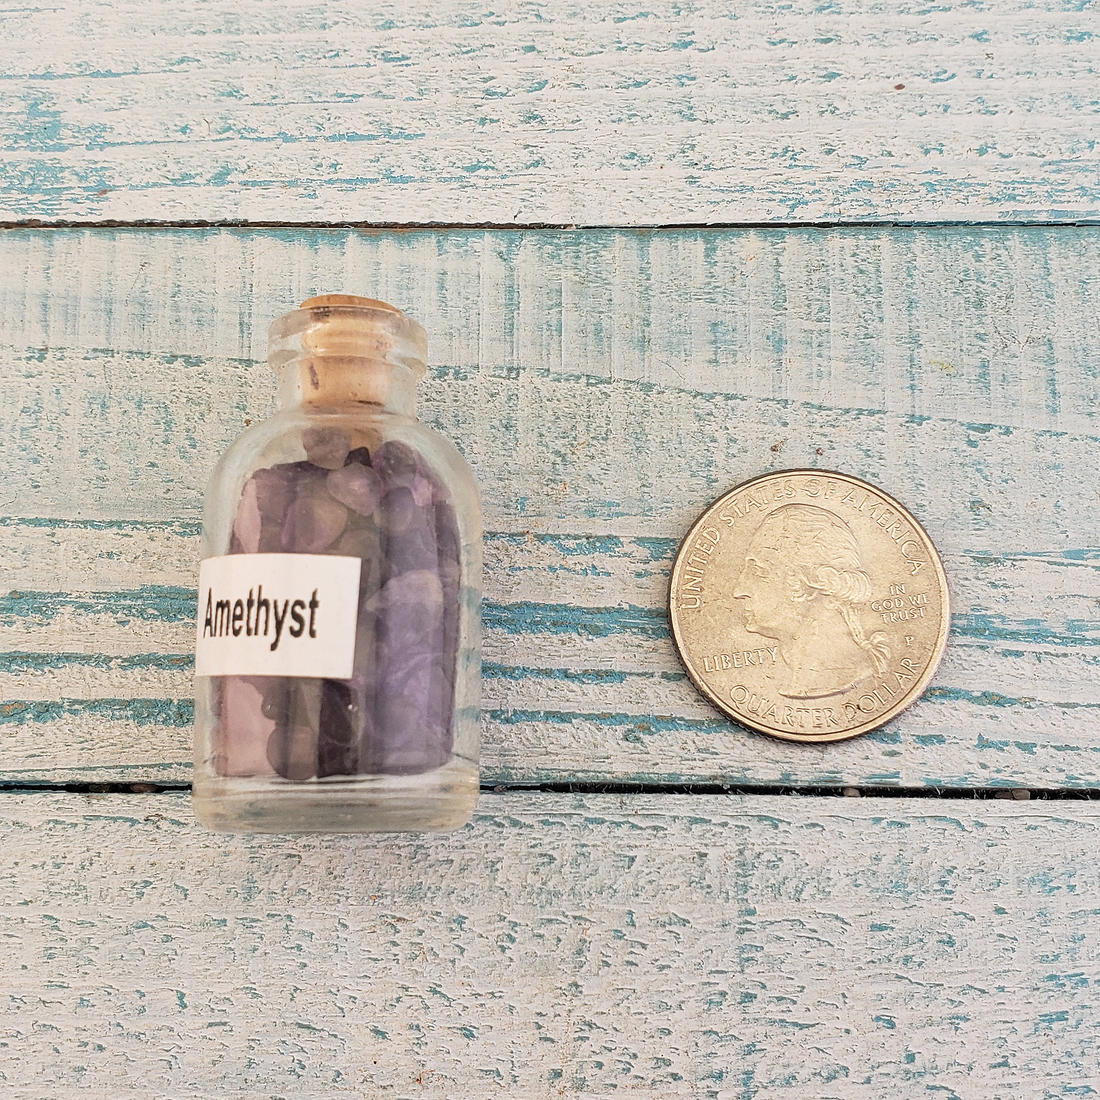 Amethyst Natural Crystal Chips Bottle - One Bottle Size Comparison